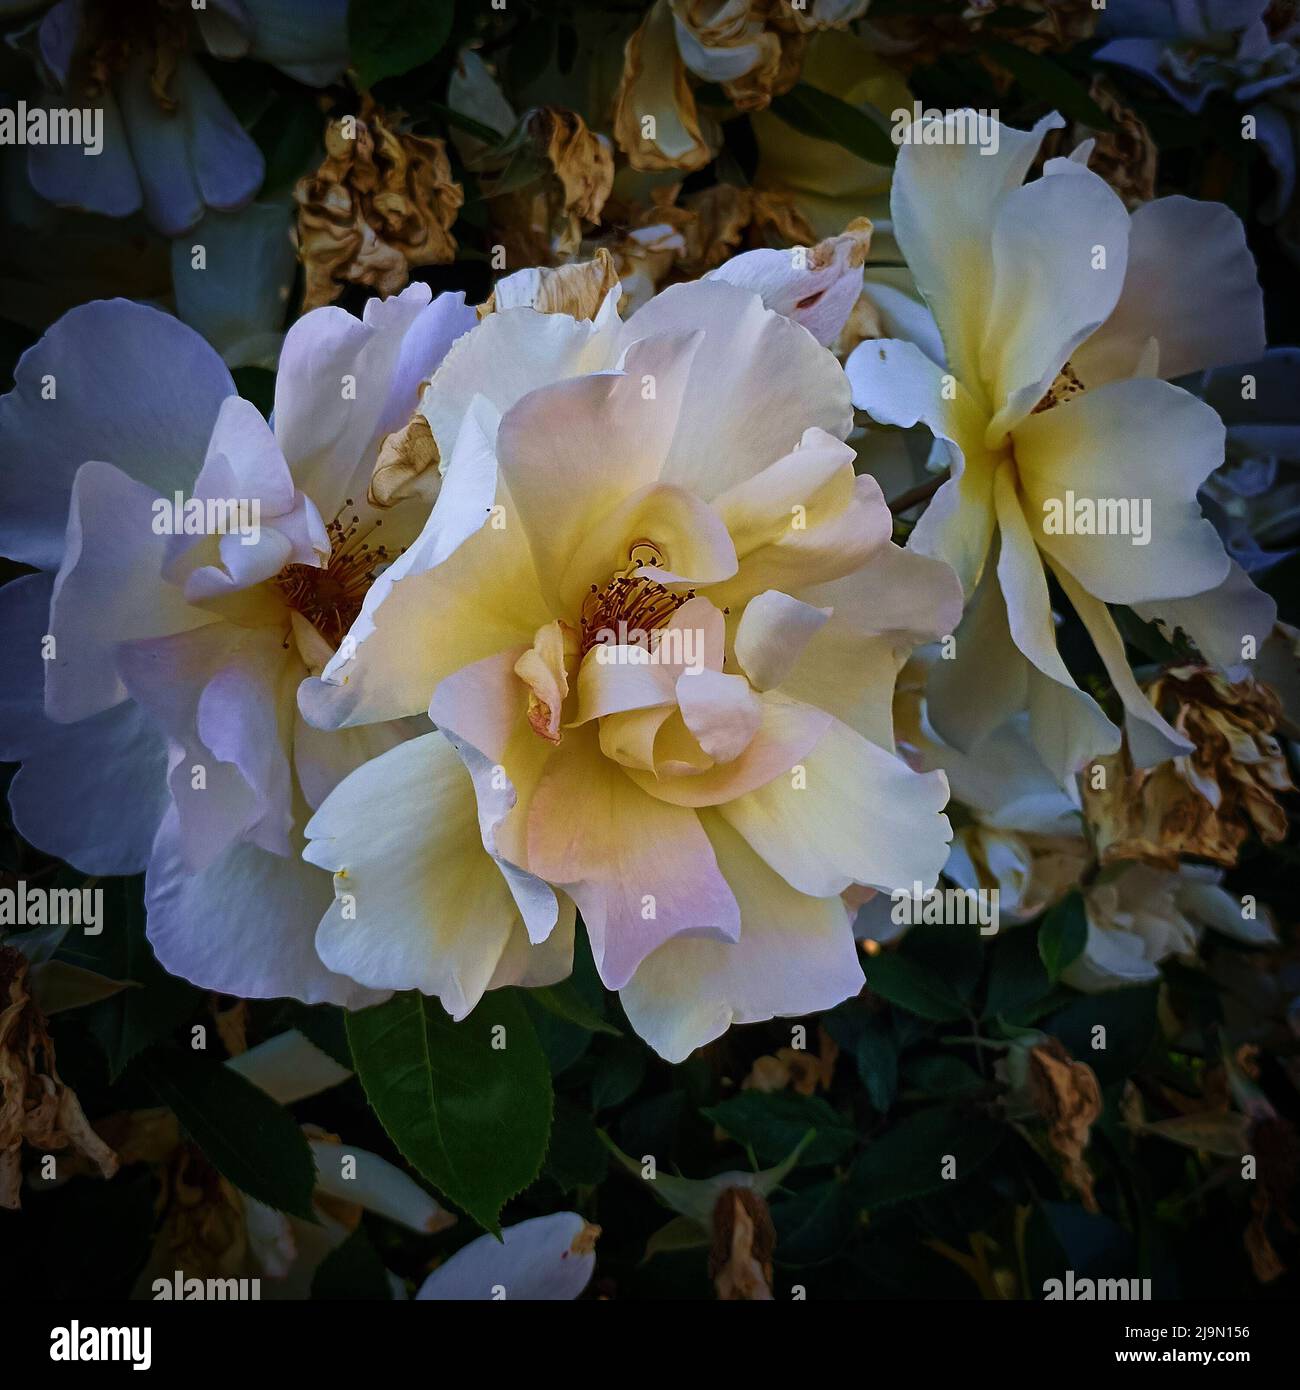 Image de roses de couleur jaune blanc, 3 grandes fleurs en fleur, une photo de buisson de roses en plein air Banque D'Images